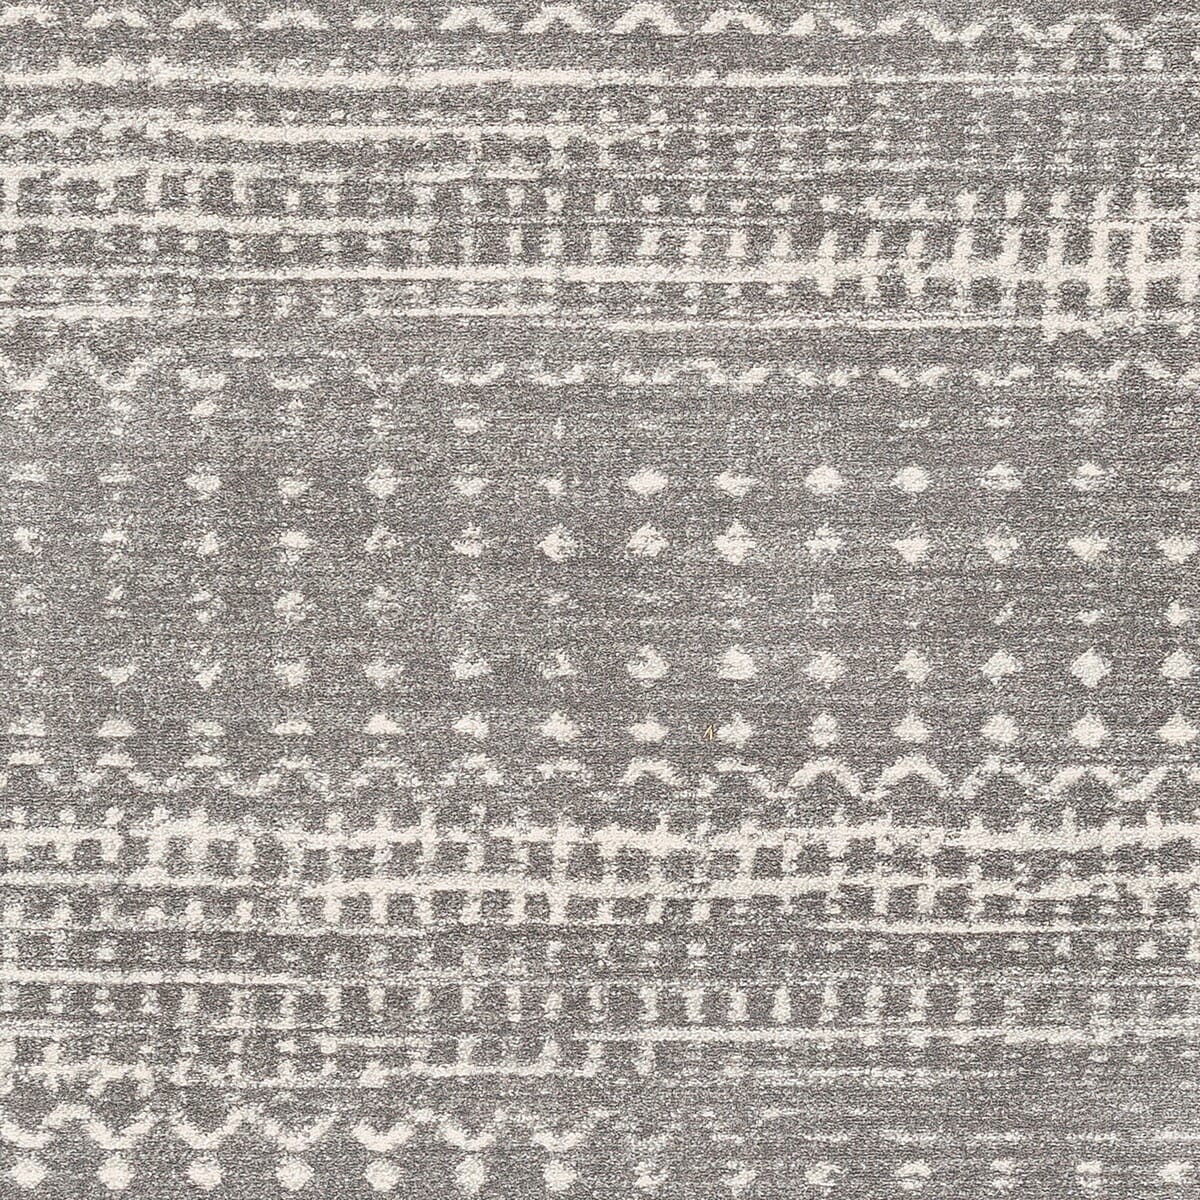 Surya Harput Hap-1096 Charcoal, Light Gray, White Moroccan Area Rug